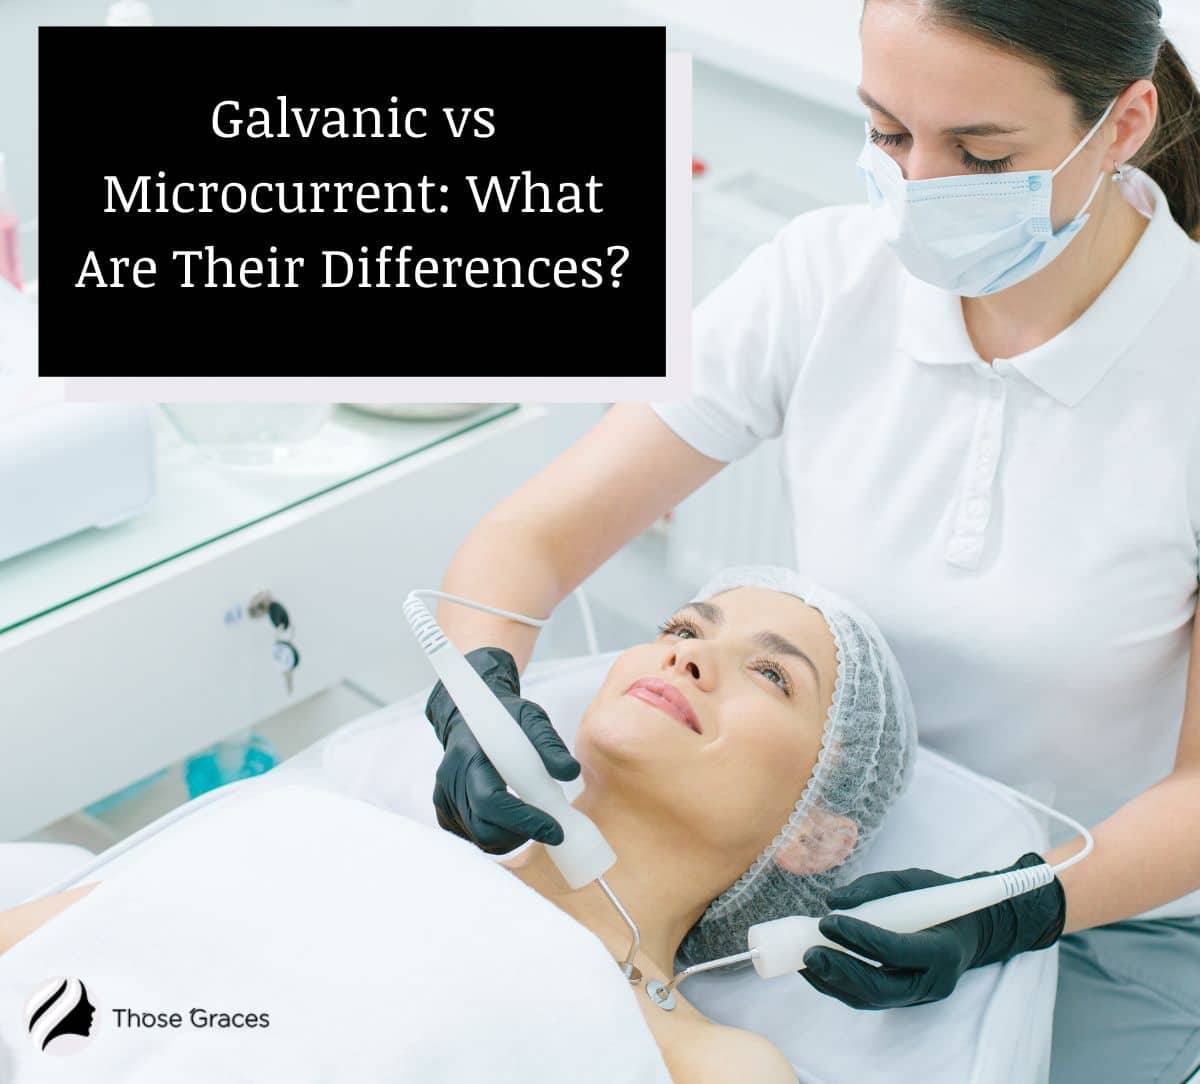 Galvanic vs Microcurrent